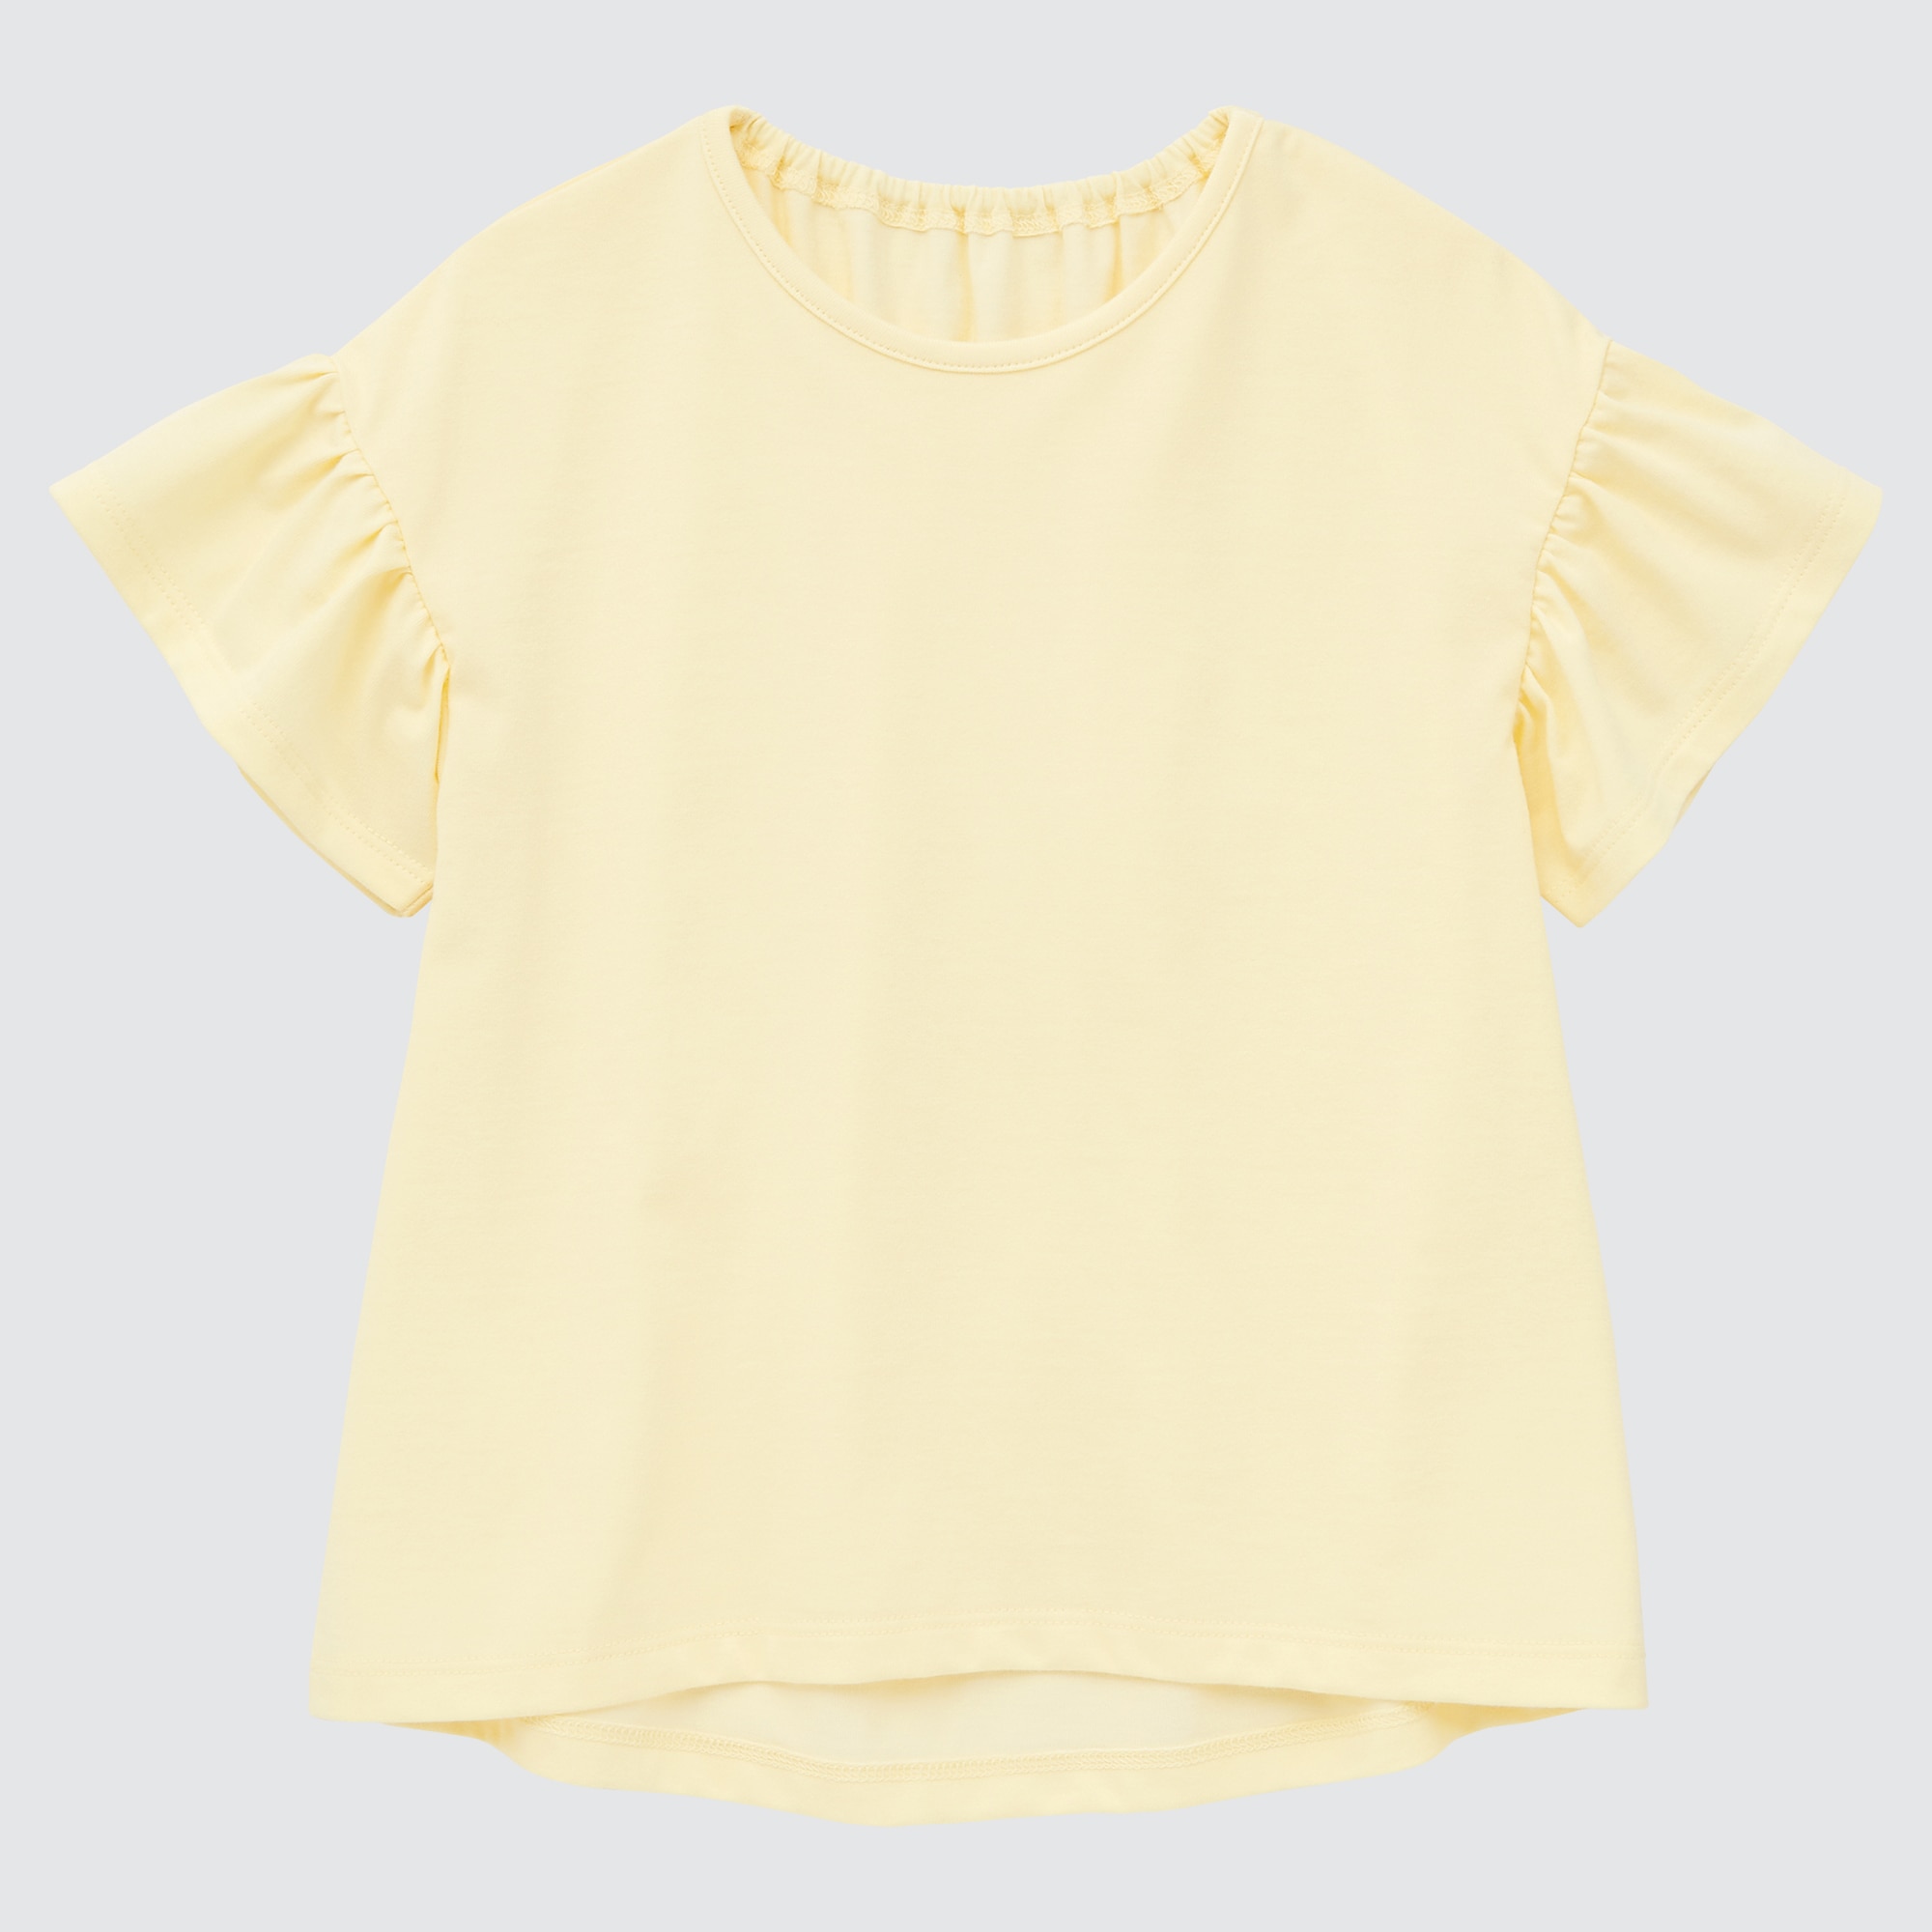 「エアリズムコットンTシャツ（フリル･半袖）、レギンス（レギュラーフィット・フラワー・7分丈）」を使った着こなし| ユニクロ